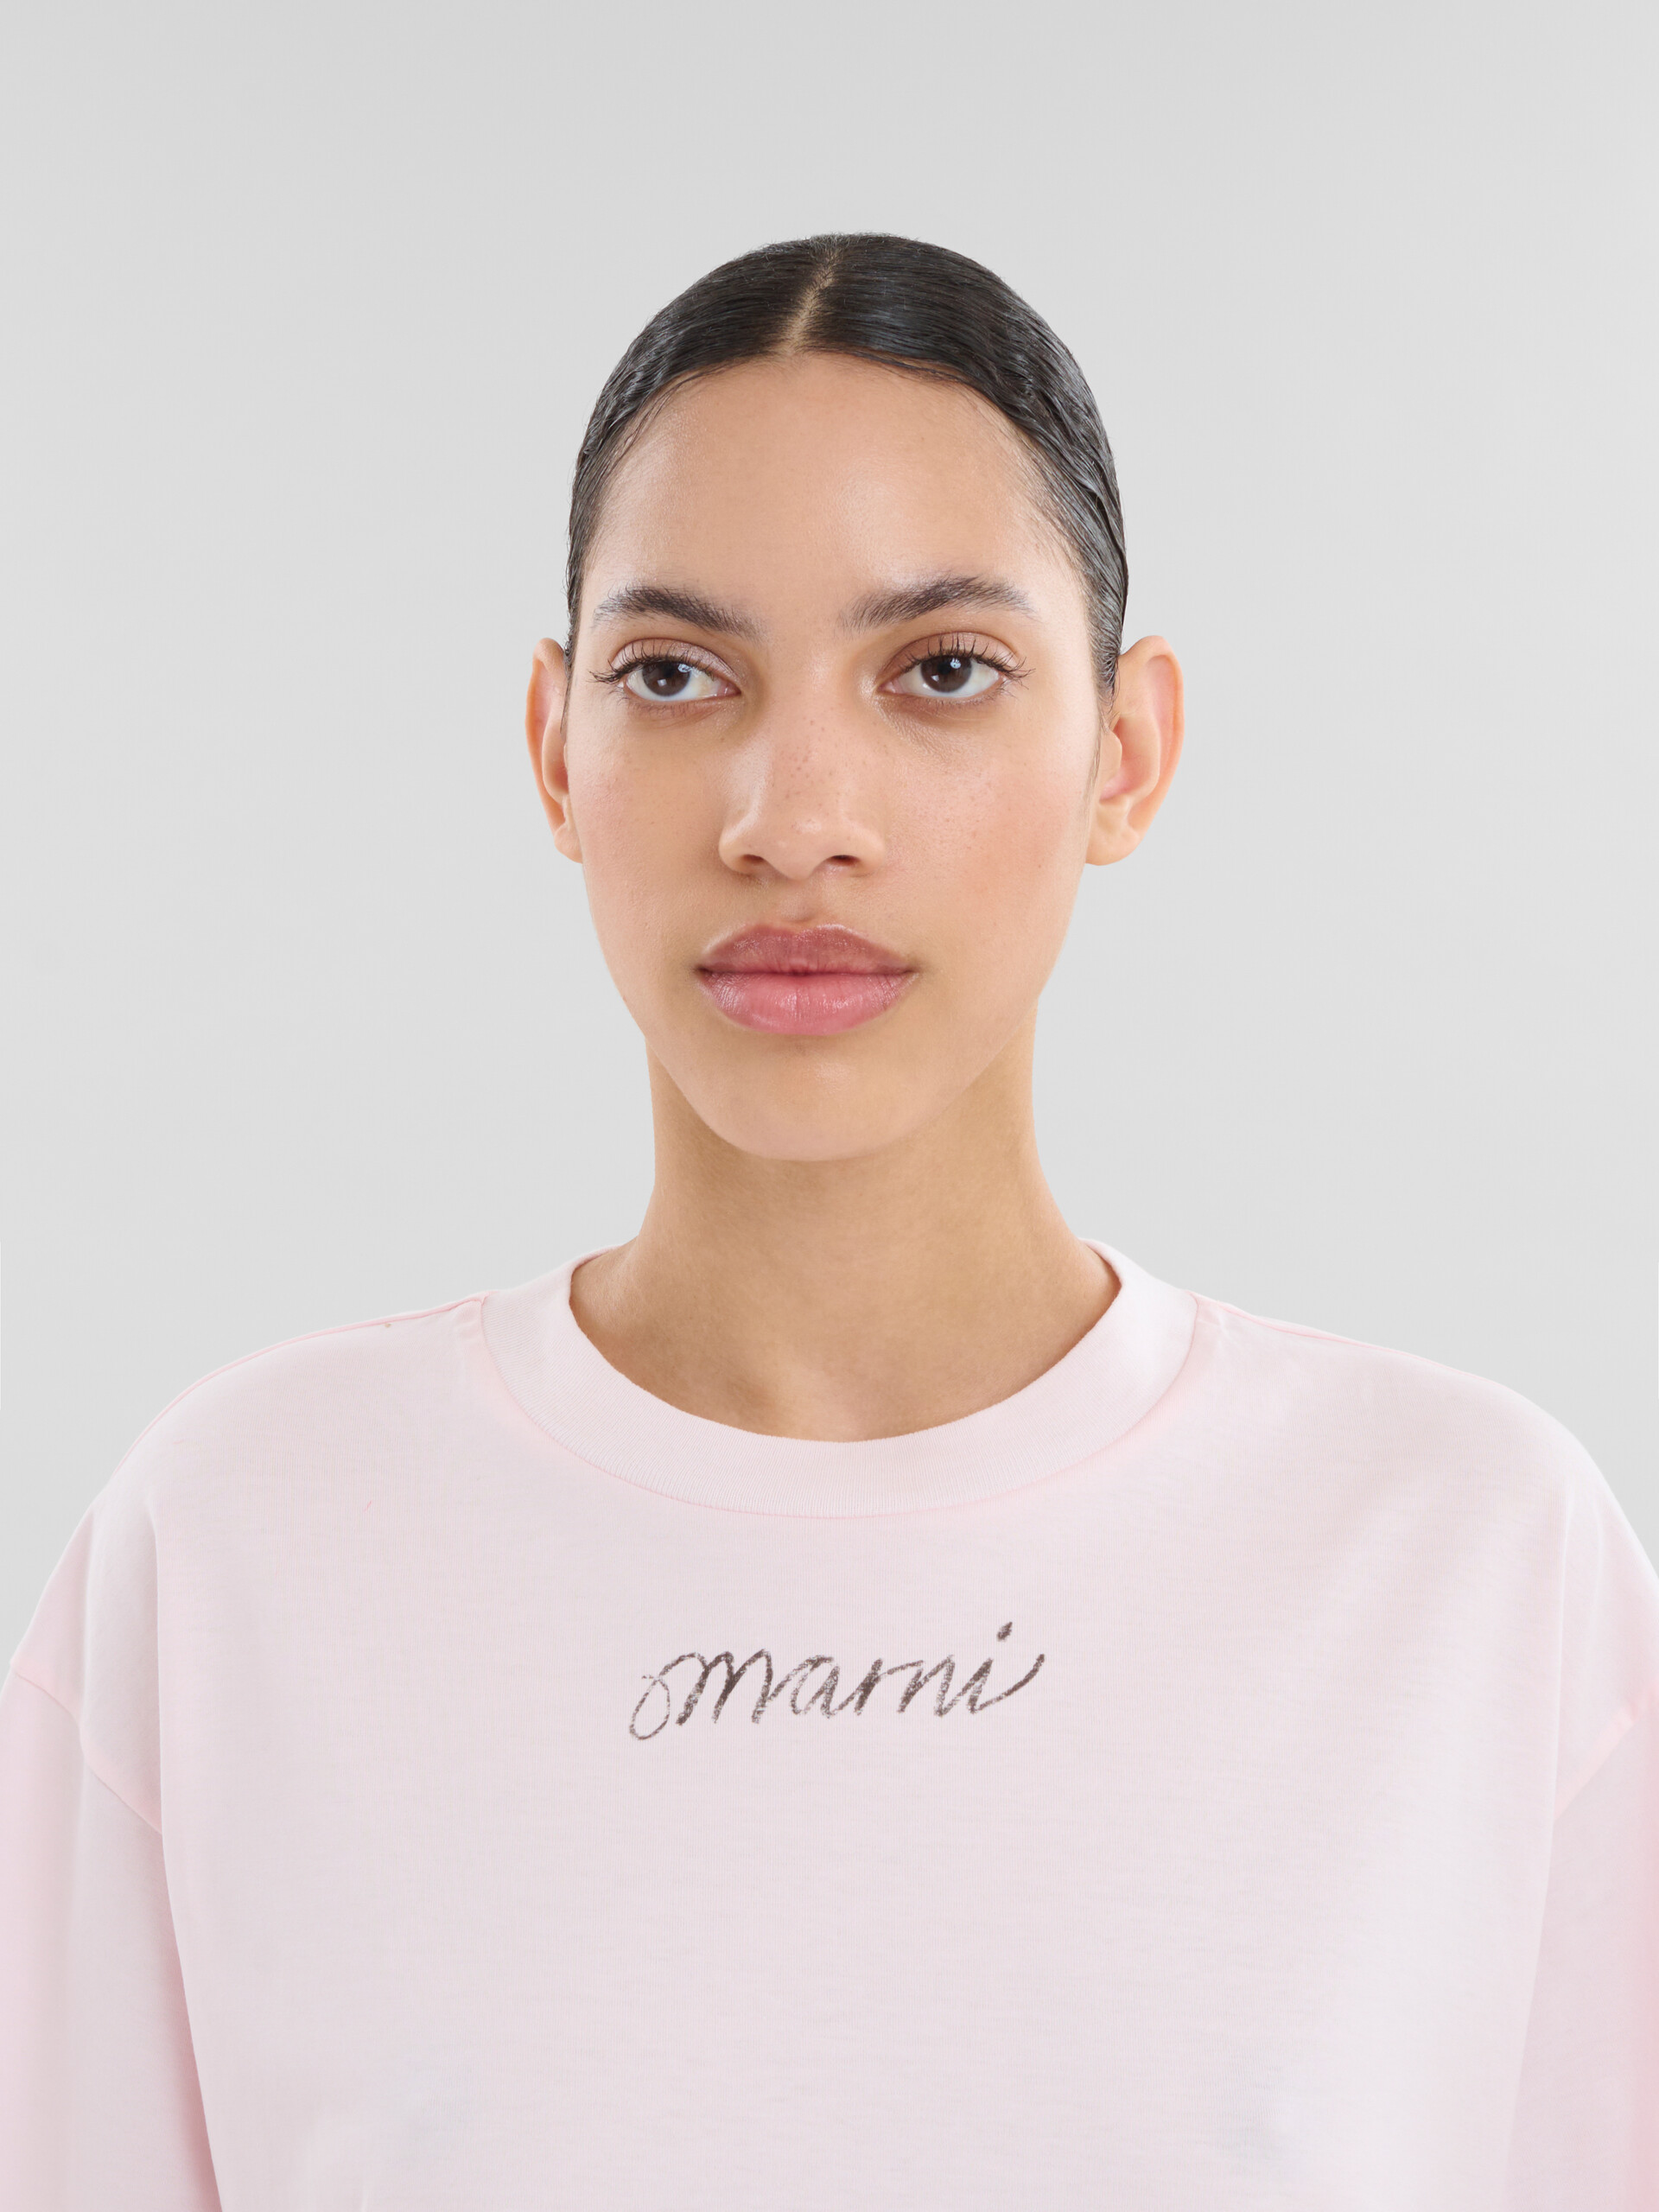 Camiseta de corte cuadrado rosa de algodón orgánico con logotipo repetido - Camisetas - Image 4